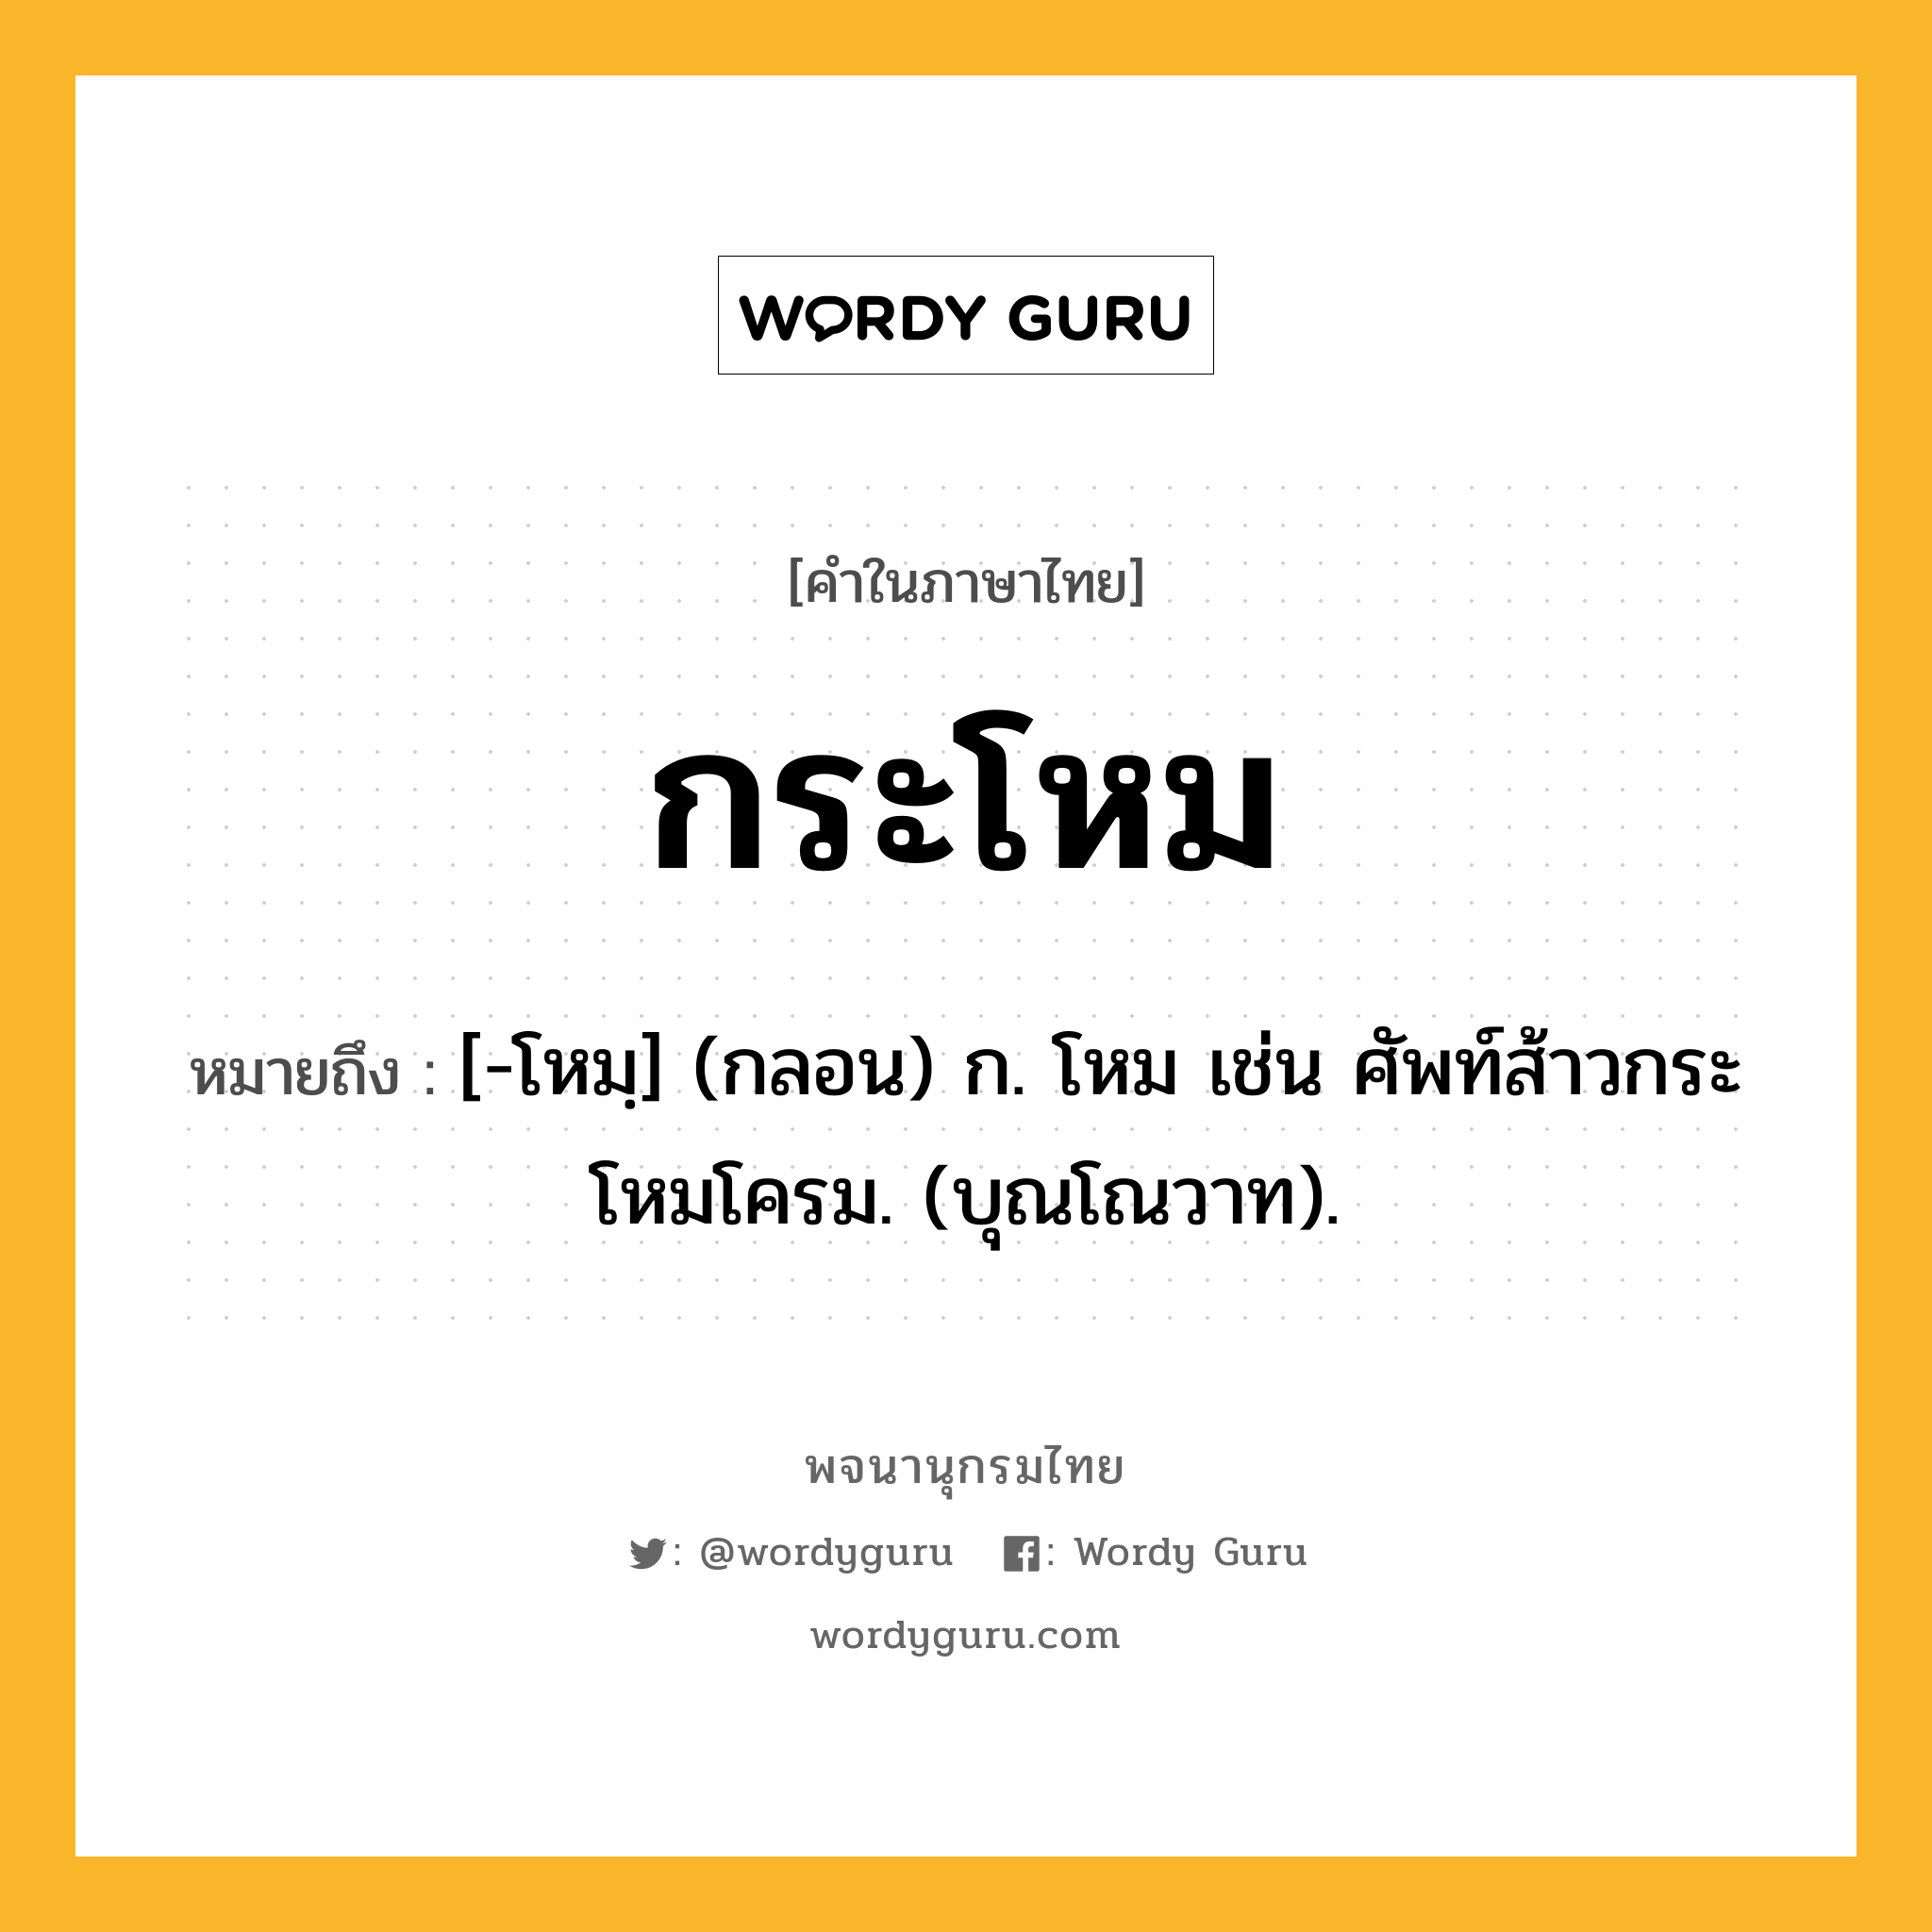 กระโหม ความหมาย หมายถึงอะไร?, คำในภาษาไทย กระโหม หมายถึง [-โหมฺ] (กลอน) ก. โหม เช่น ศัพท์ส้าวกระโหมโครม. (บุณโณวาท).